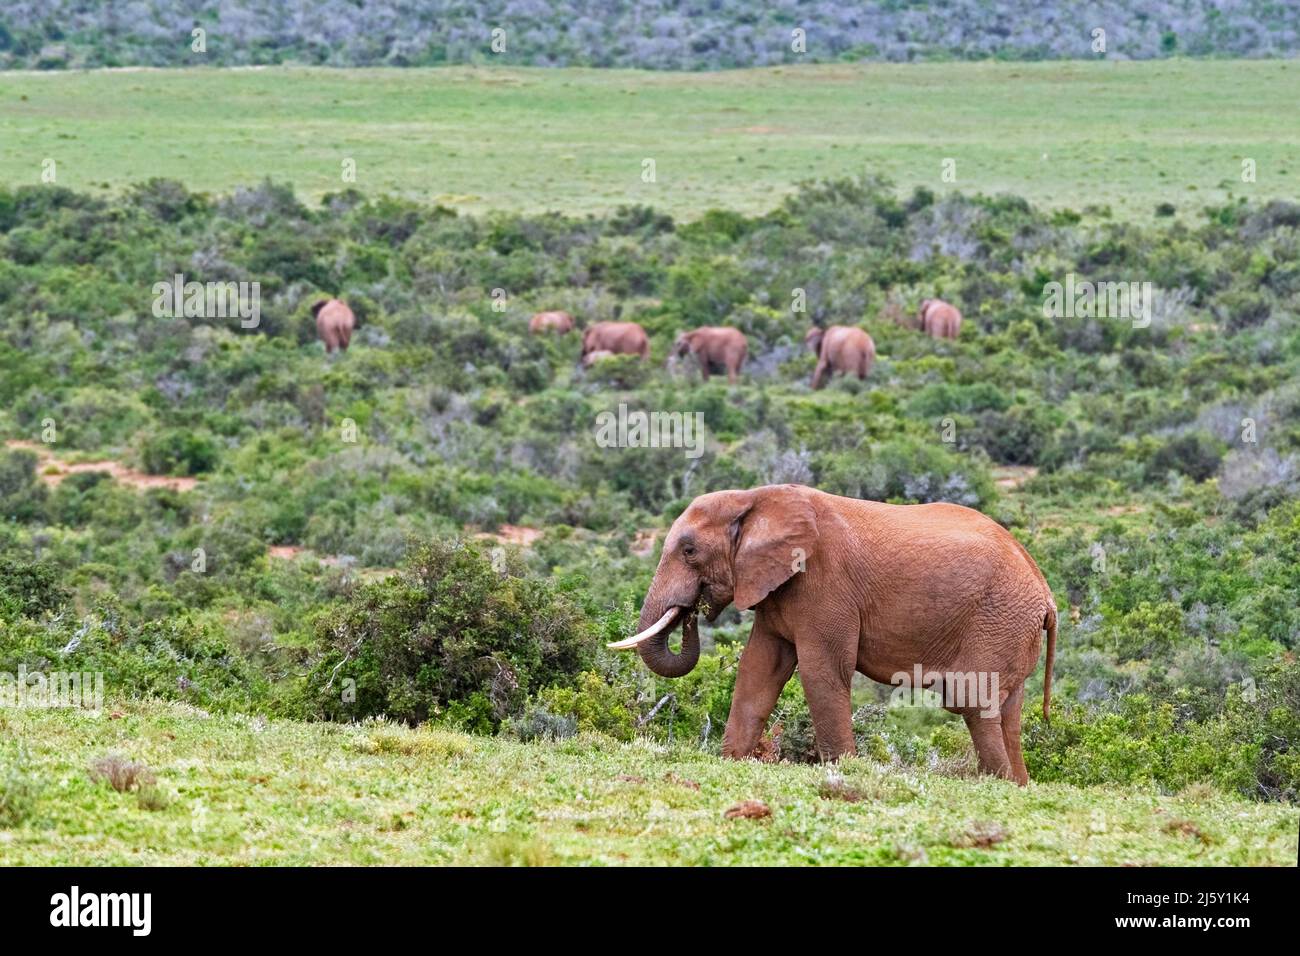 Troupeau d'éléphants de brousse africains (Loxodonta africana) en pâturage dans le parc national des éléphants d'Addo près de Gqeberha, province du Cap oriental, Afrique du Sud Banque D'Images